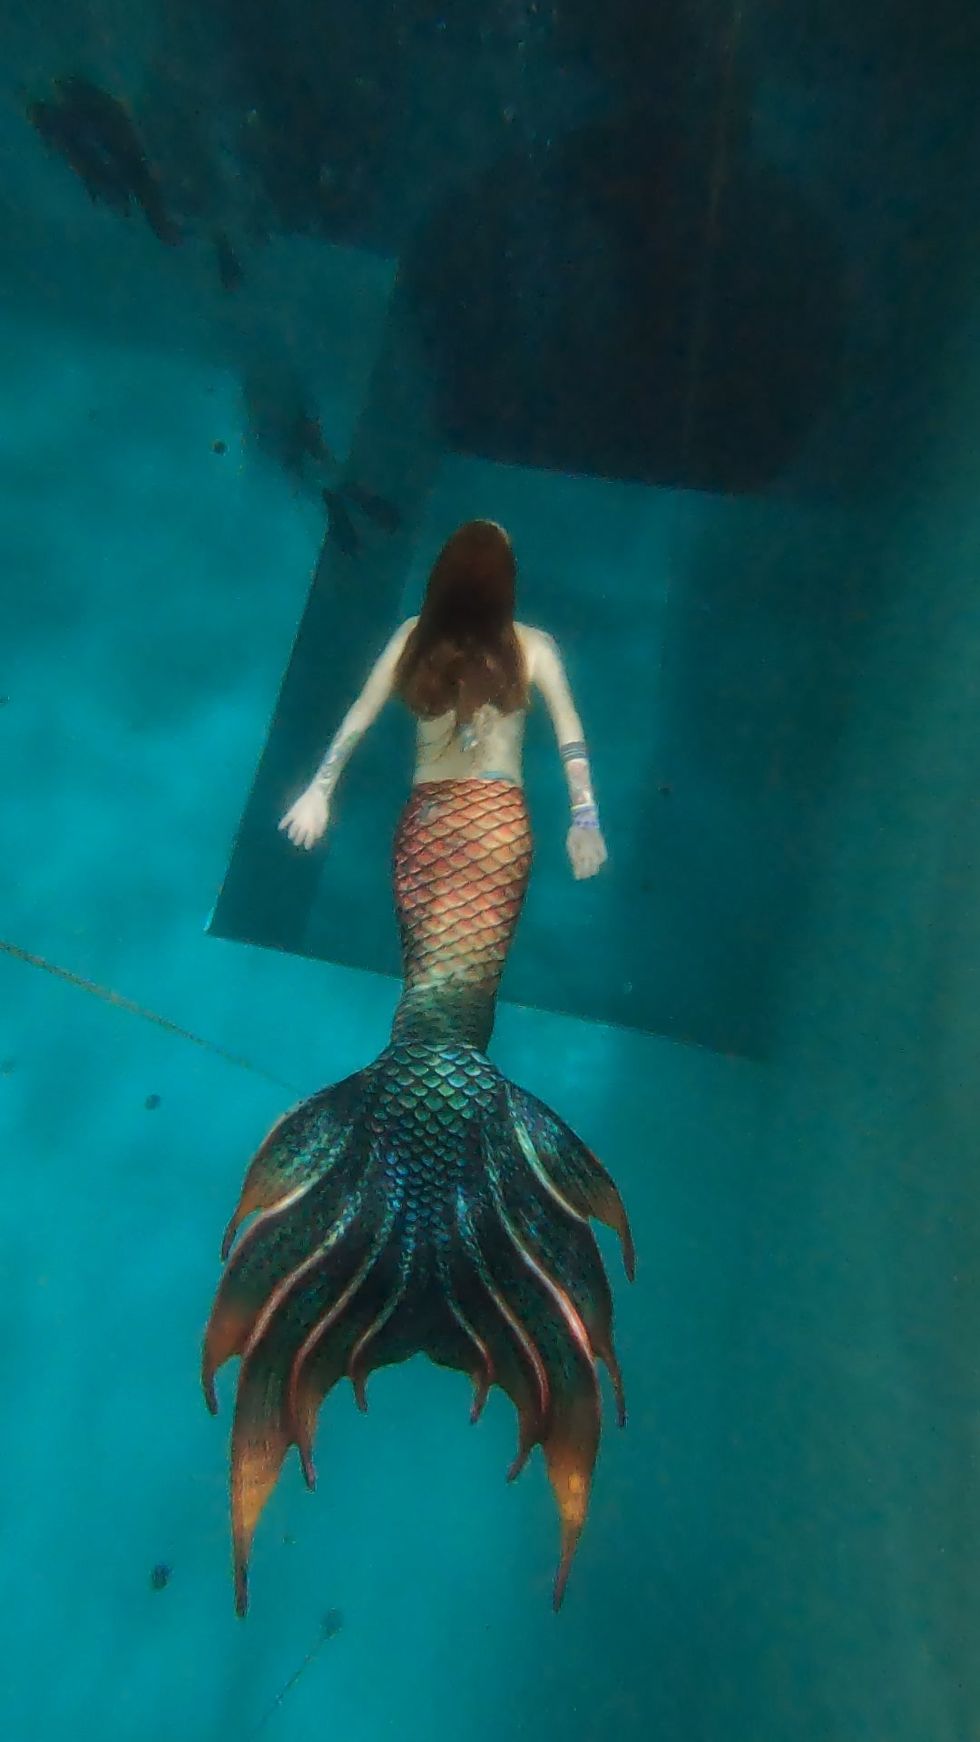 Nuotare come le sirene, cos'è lo sport per grandi Mermaiding